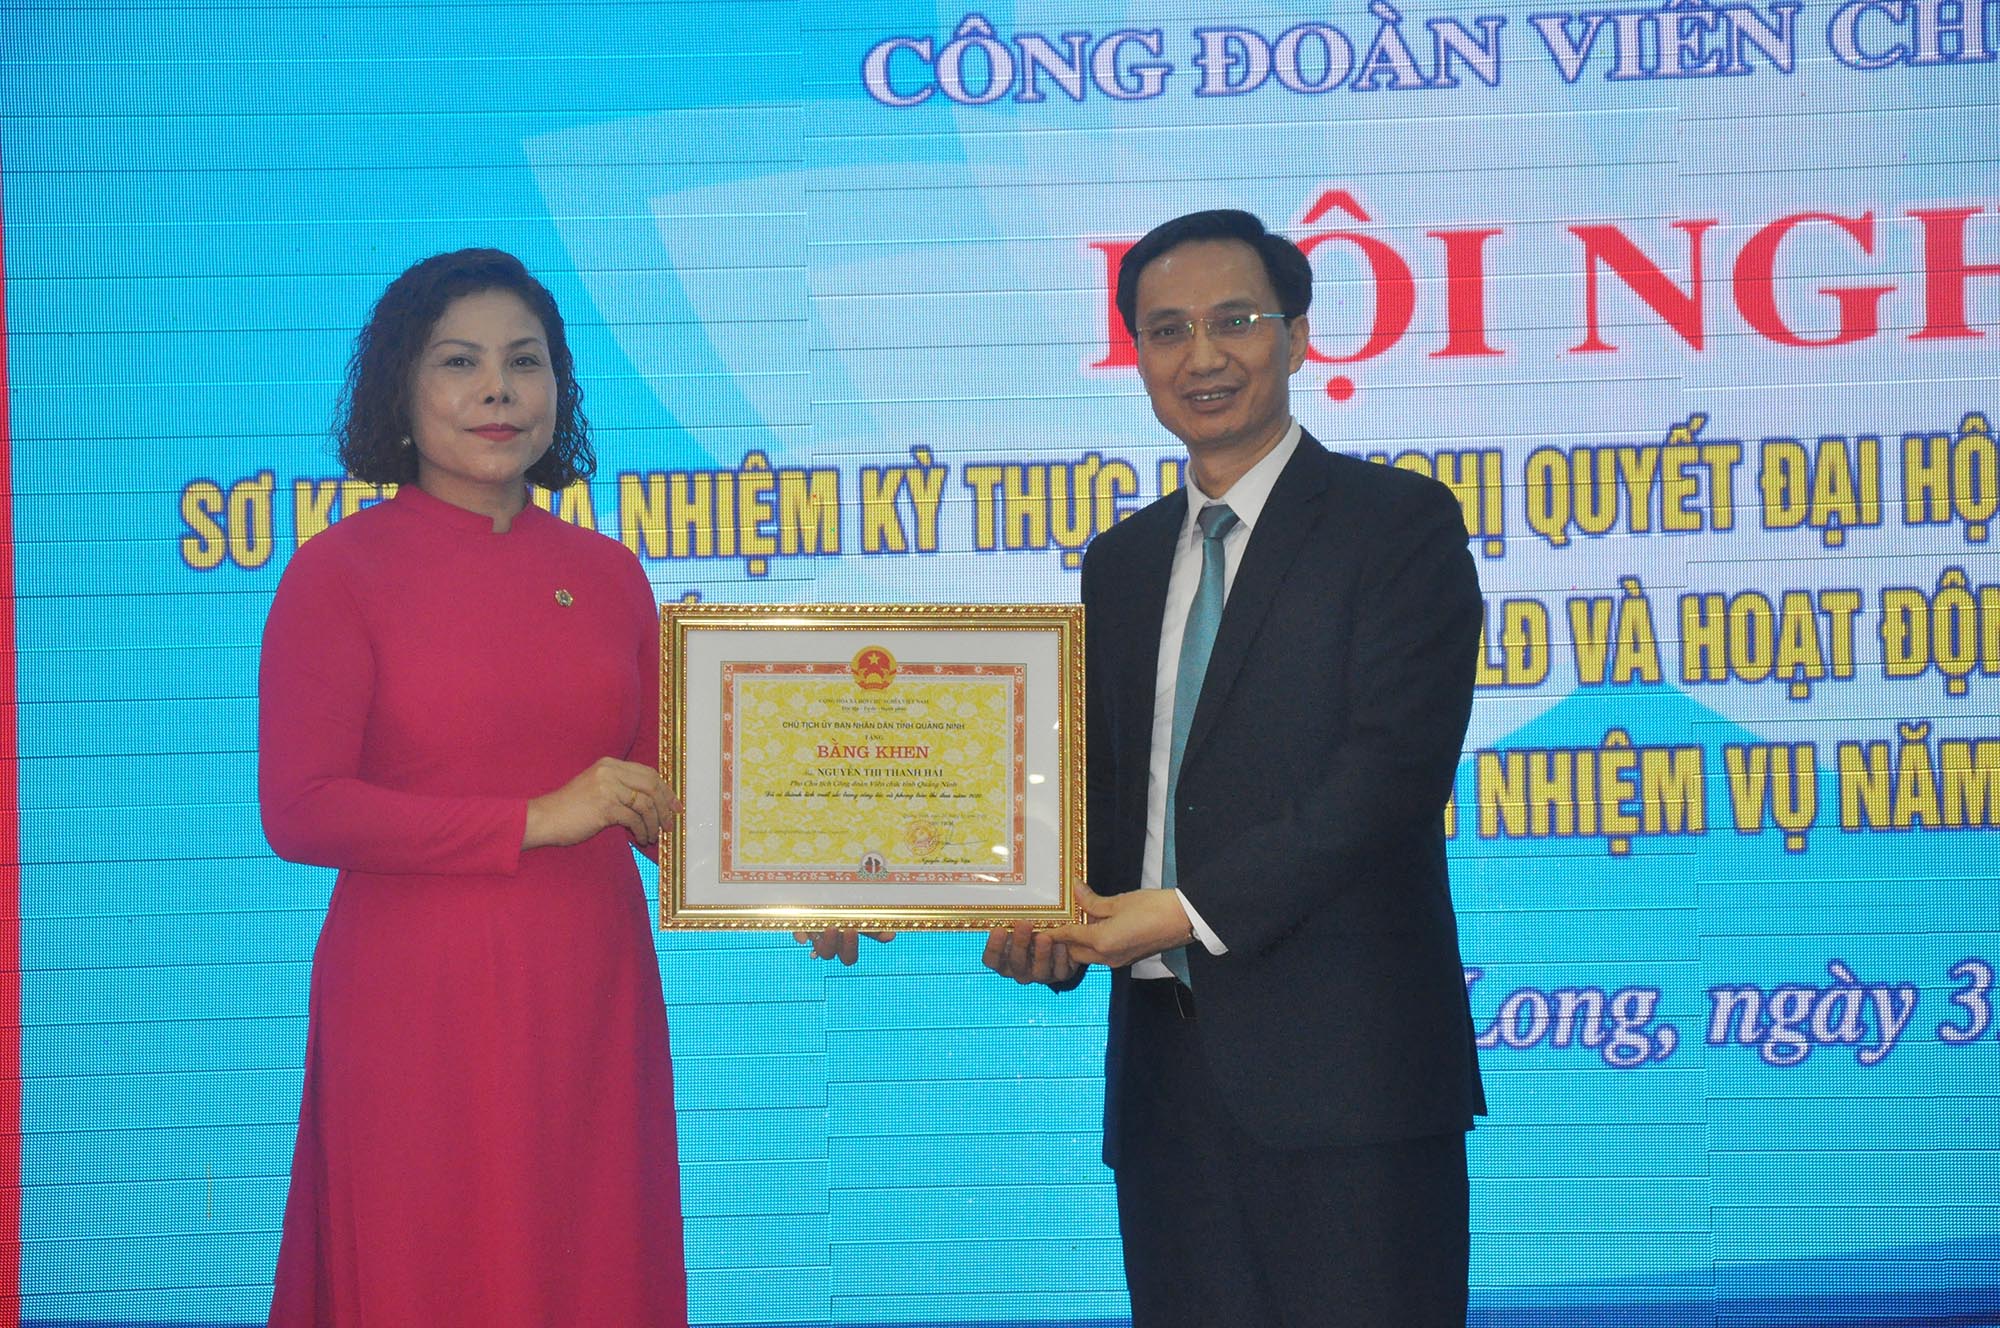 Đồng chí Nguyễn Thị Thanh Hải, Phó Chủ tịch Công đoàn Viên chức tỉnh được tặng bằng khen của UBND tỉnh.